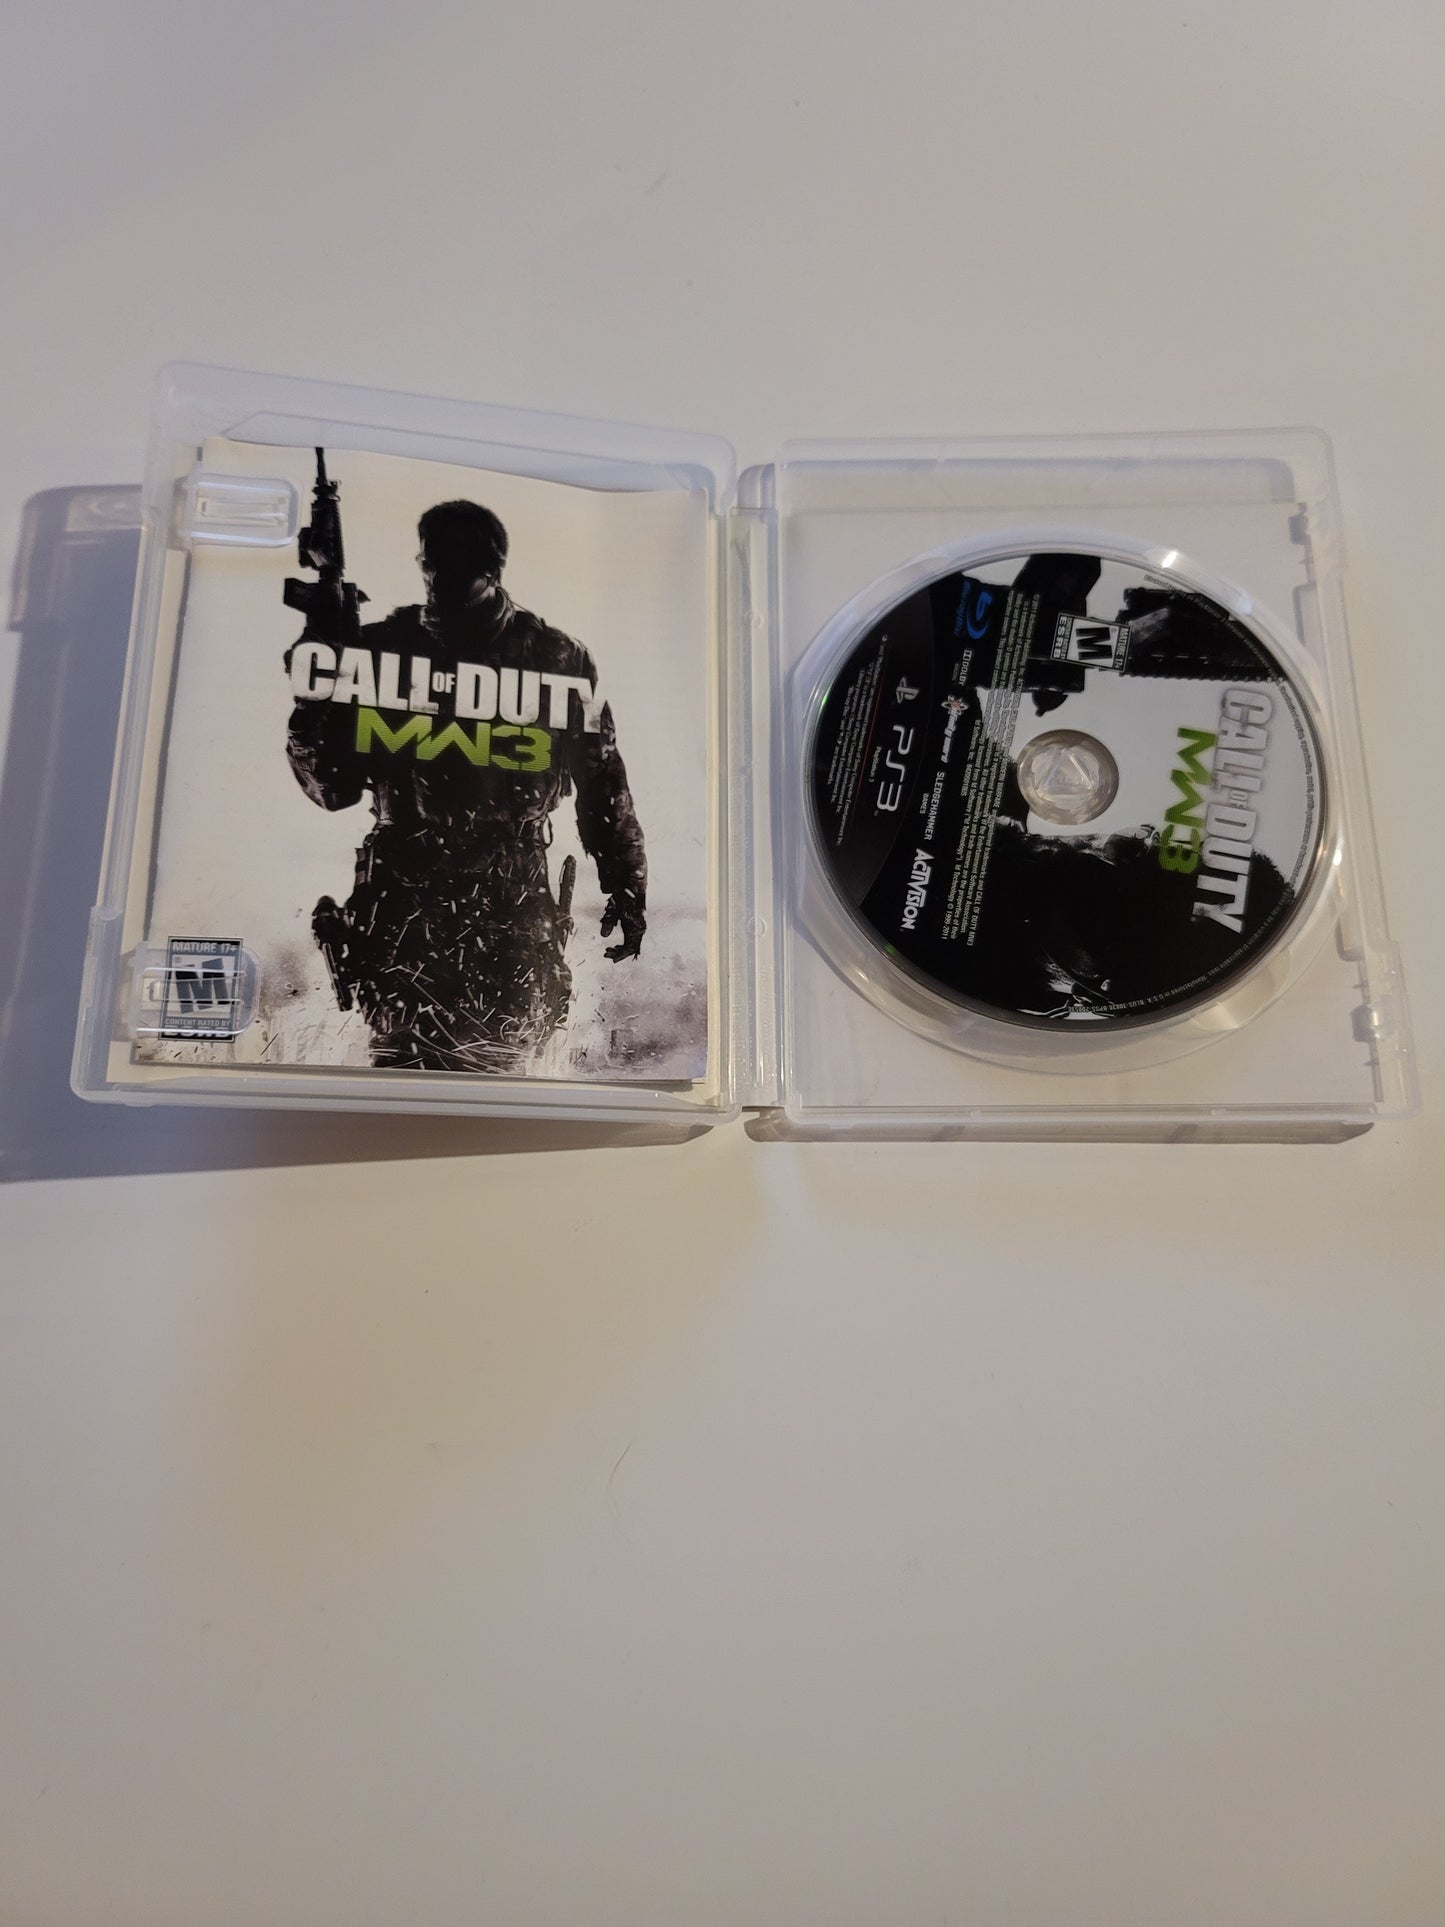 Call of Duty: Modern Warfare 3 (Sony PlayStation 3, 2011)